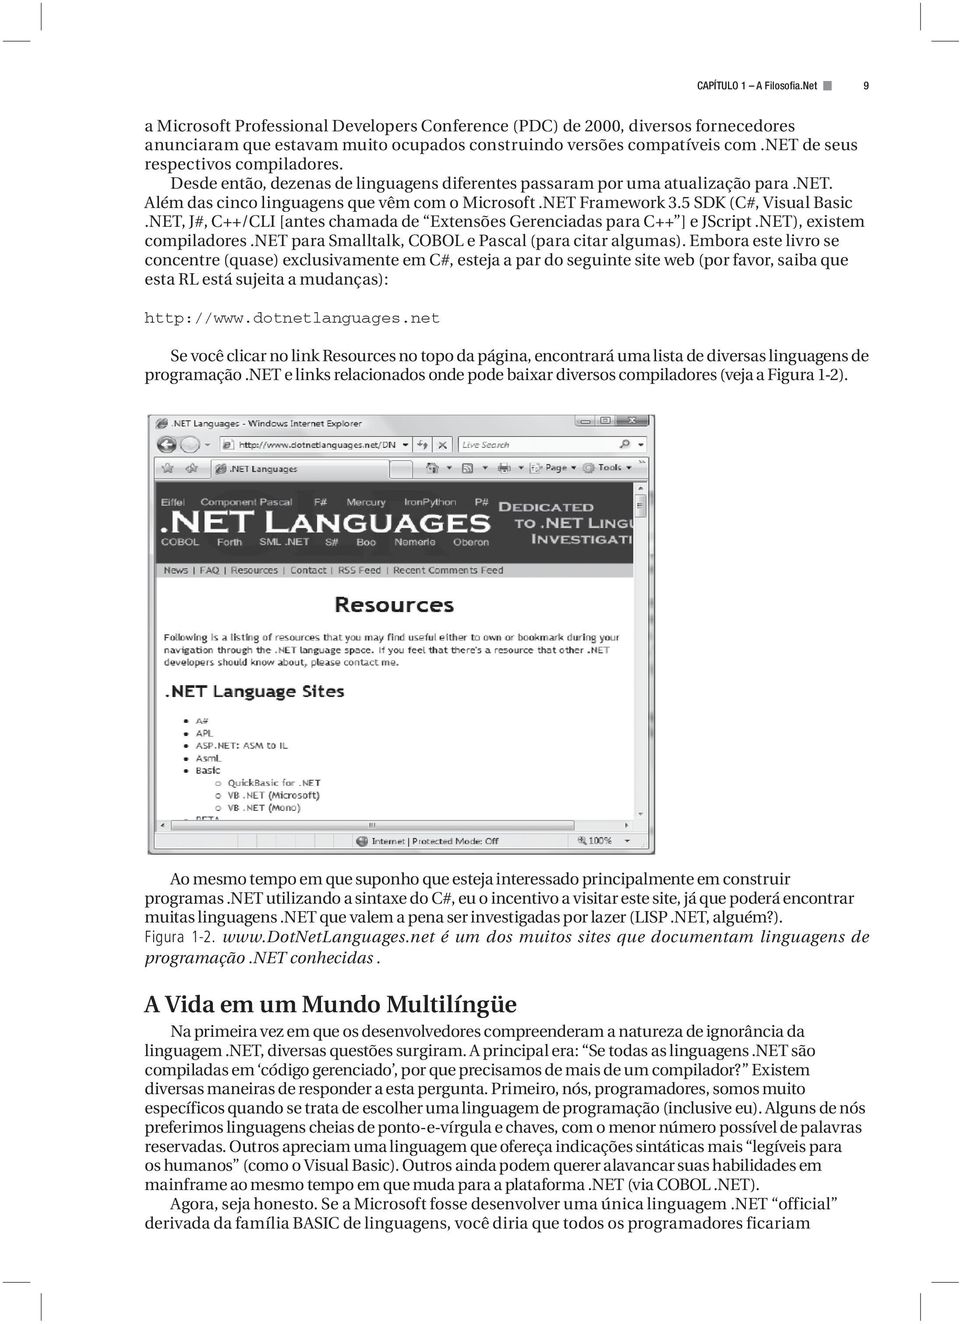 5 SDK (C#, Visual Basic.NET, J#, C++/CLI [antes chamada de Extensões Gerenciadas para C++ ] e JScript.NET), existem compiladores.net para Smalltalk, COBOL e Pascal (para citar algumas).